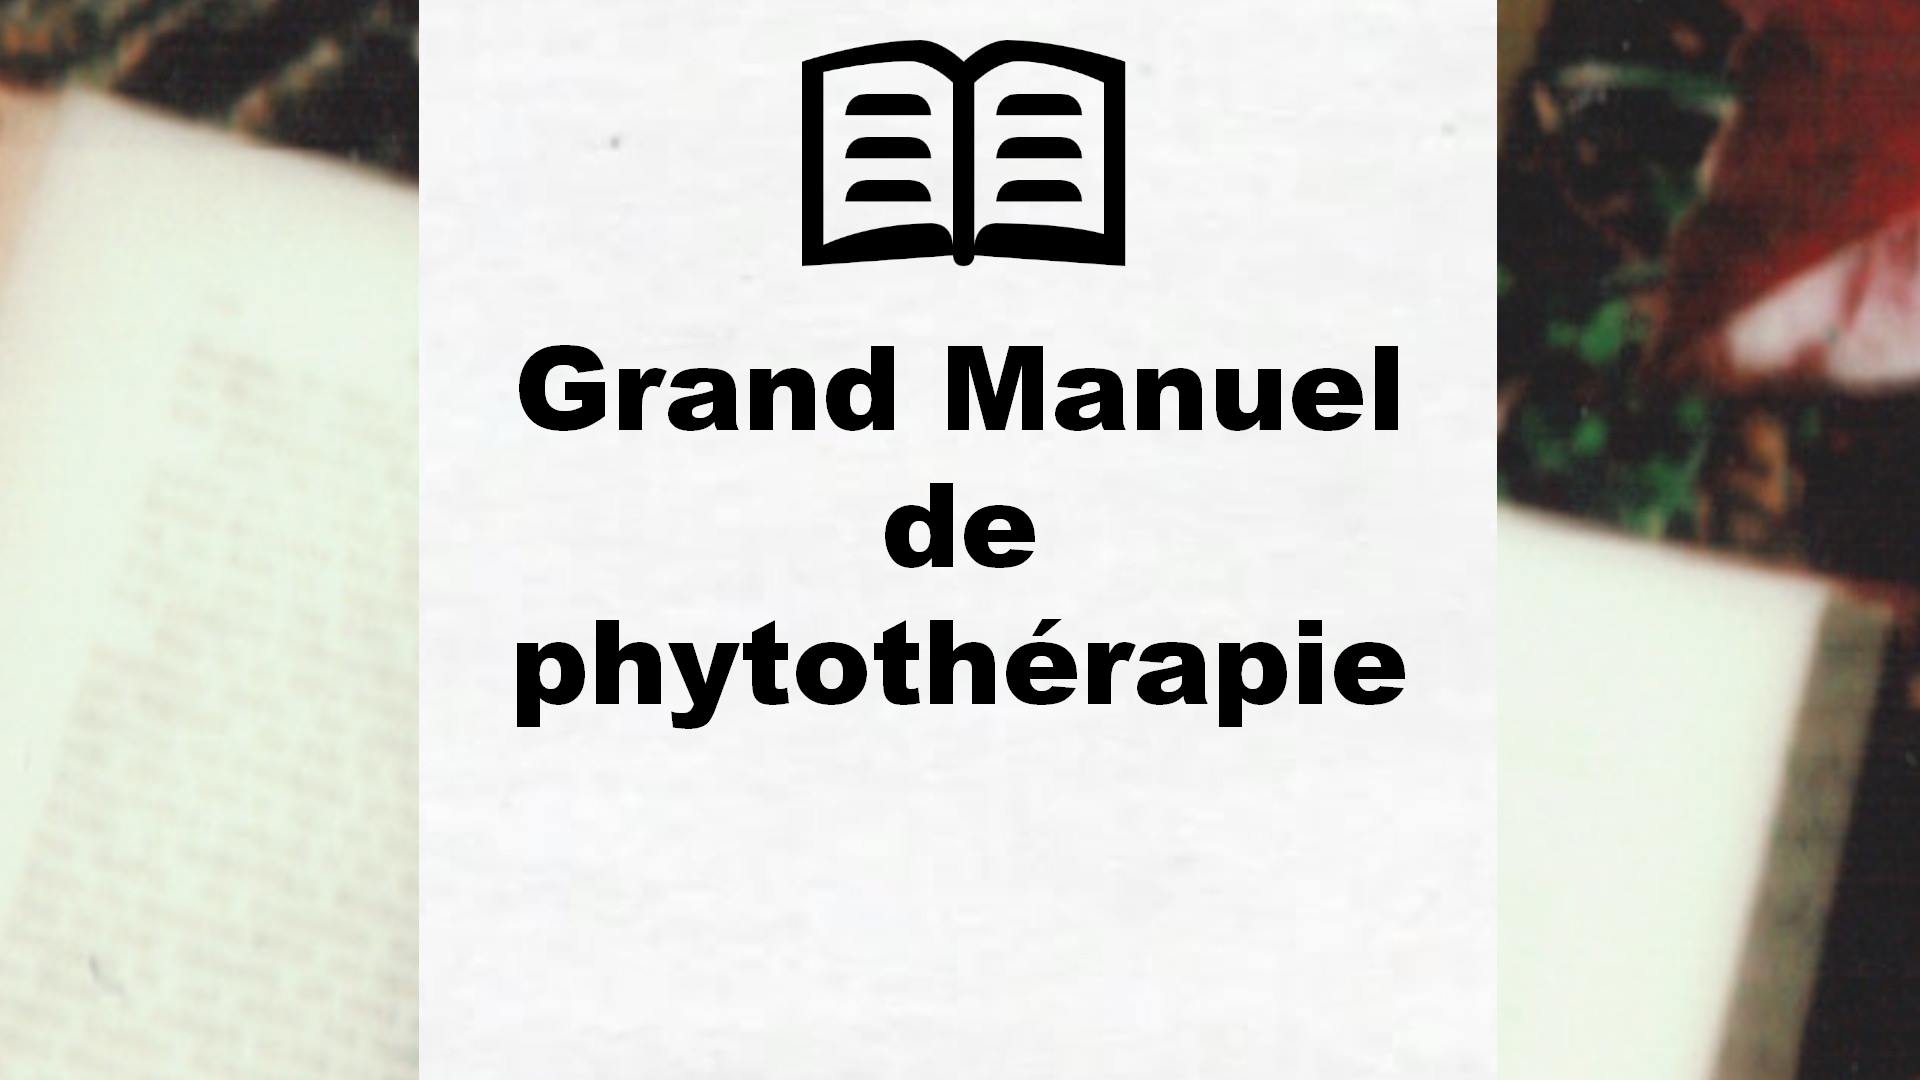 Grand Manuel de phytothérapie – Critique